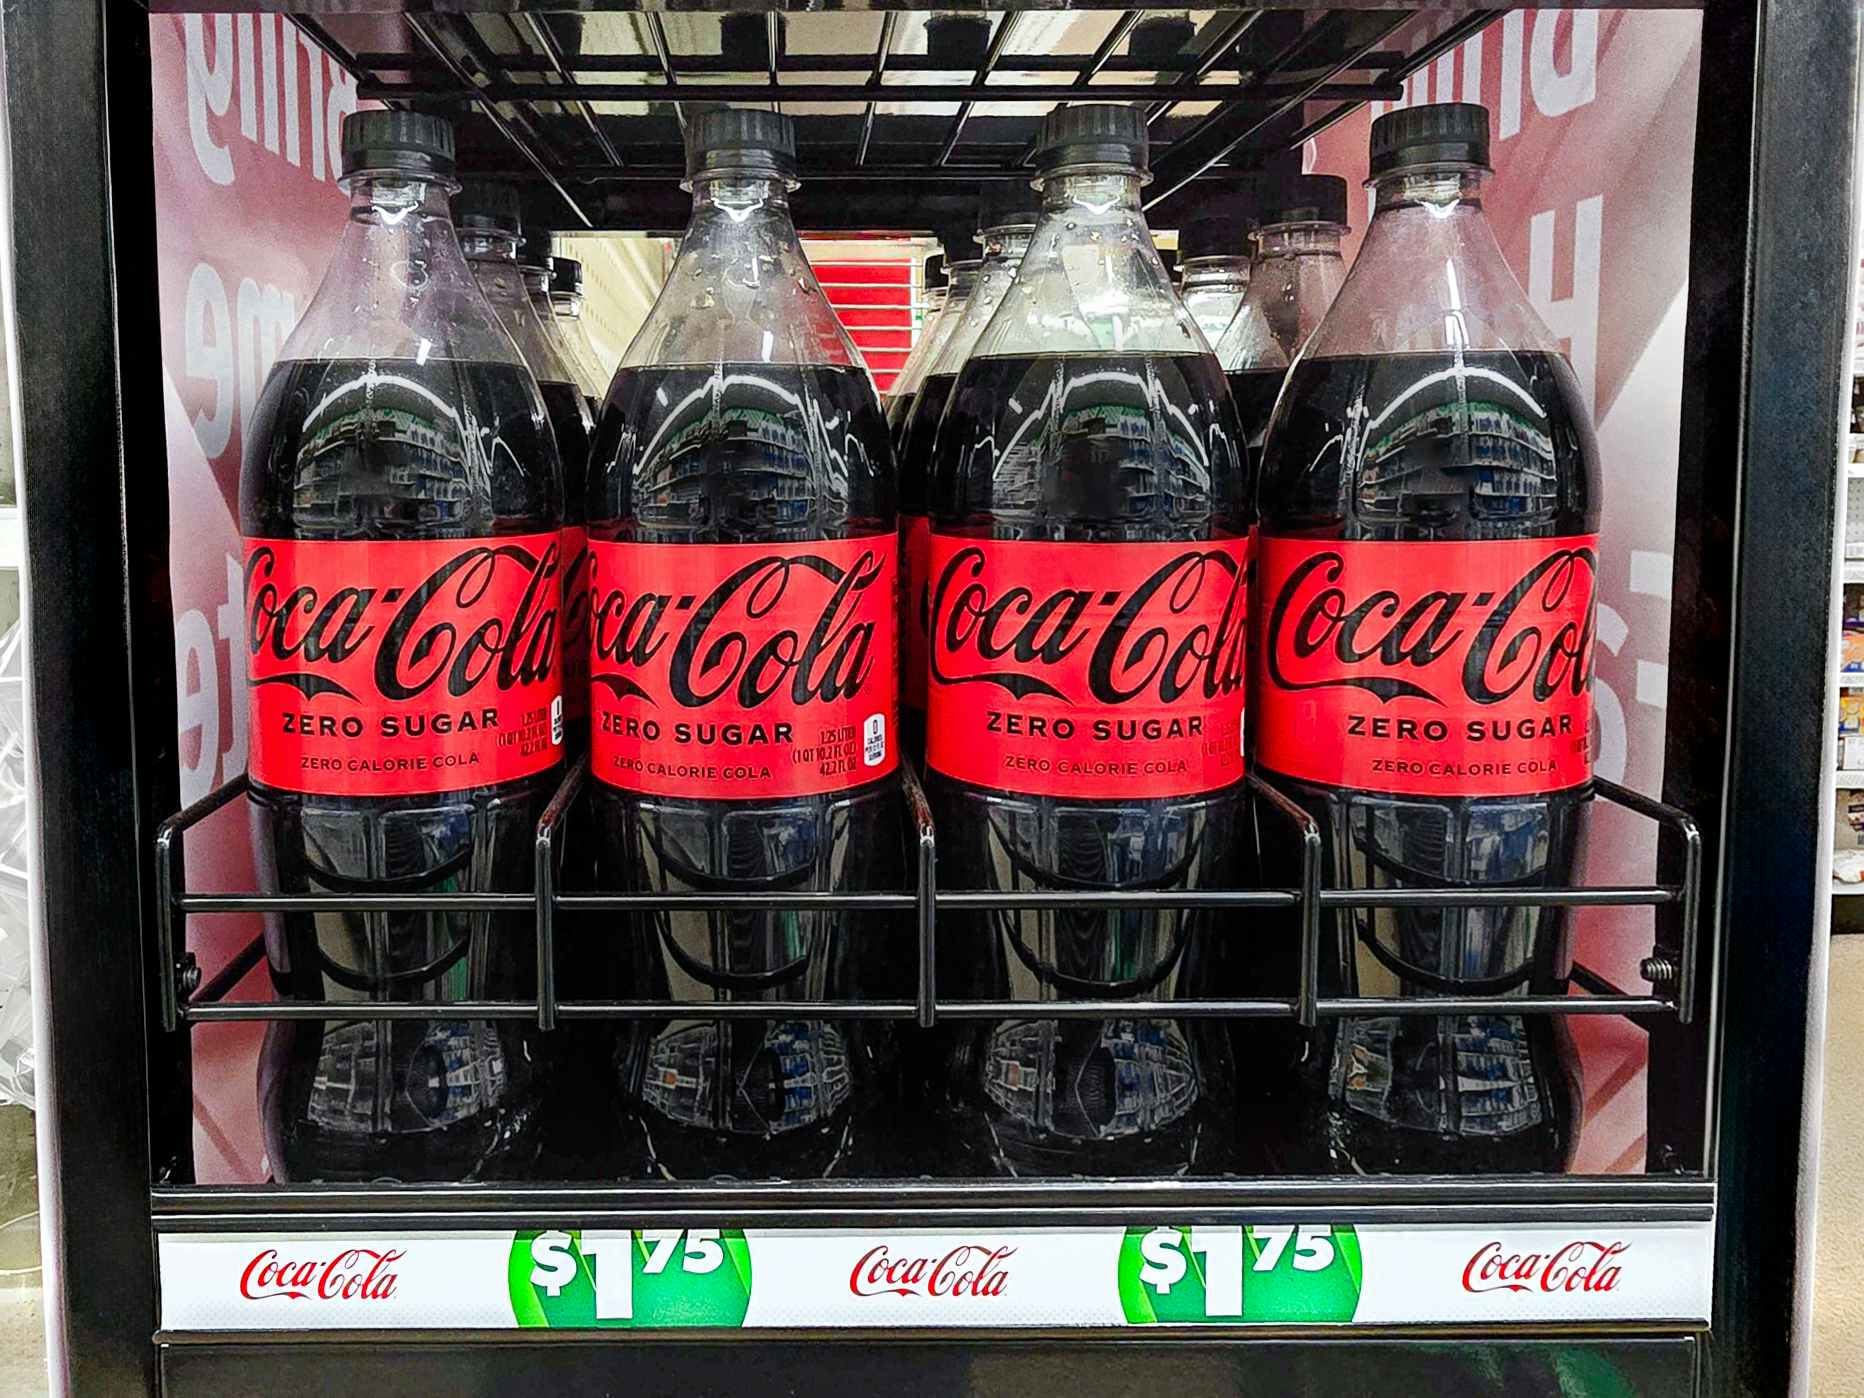 dollar-tree-price-increases-coca-cola-zero-sugar-bottles-kcl